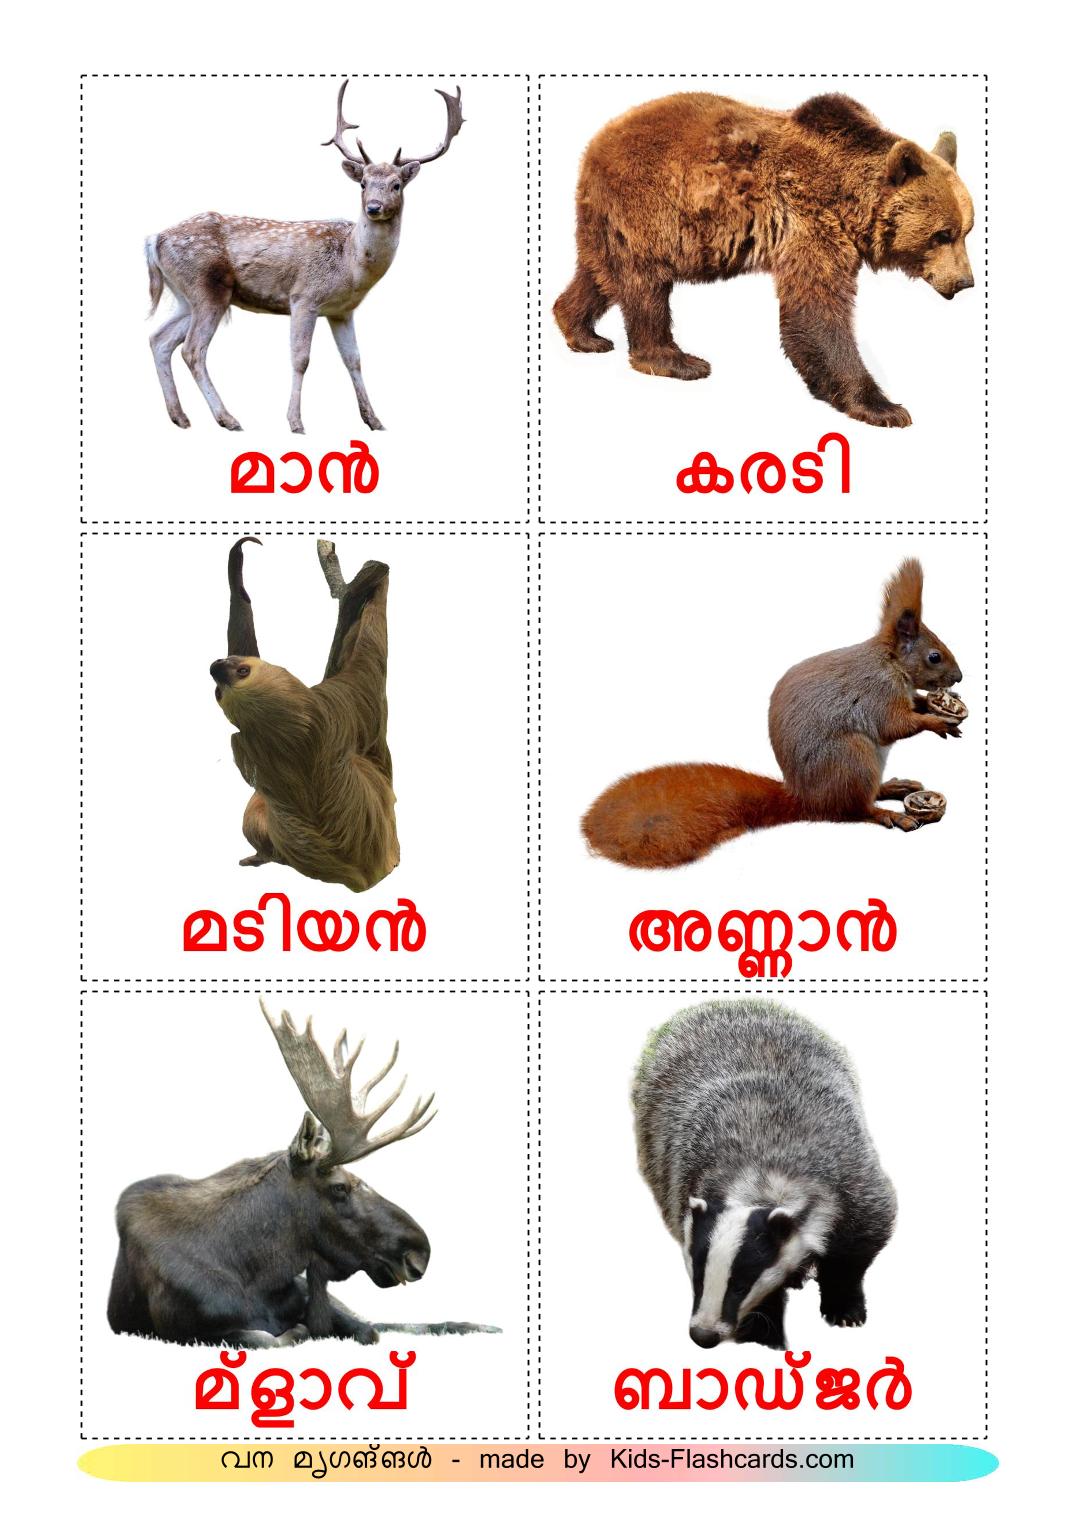 Animales del Bosque - 22 fichas de malayalam para imprimir gratis 